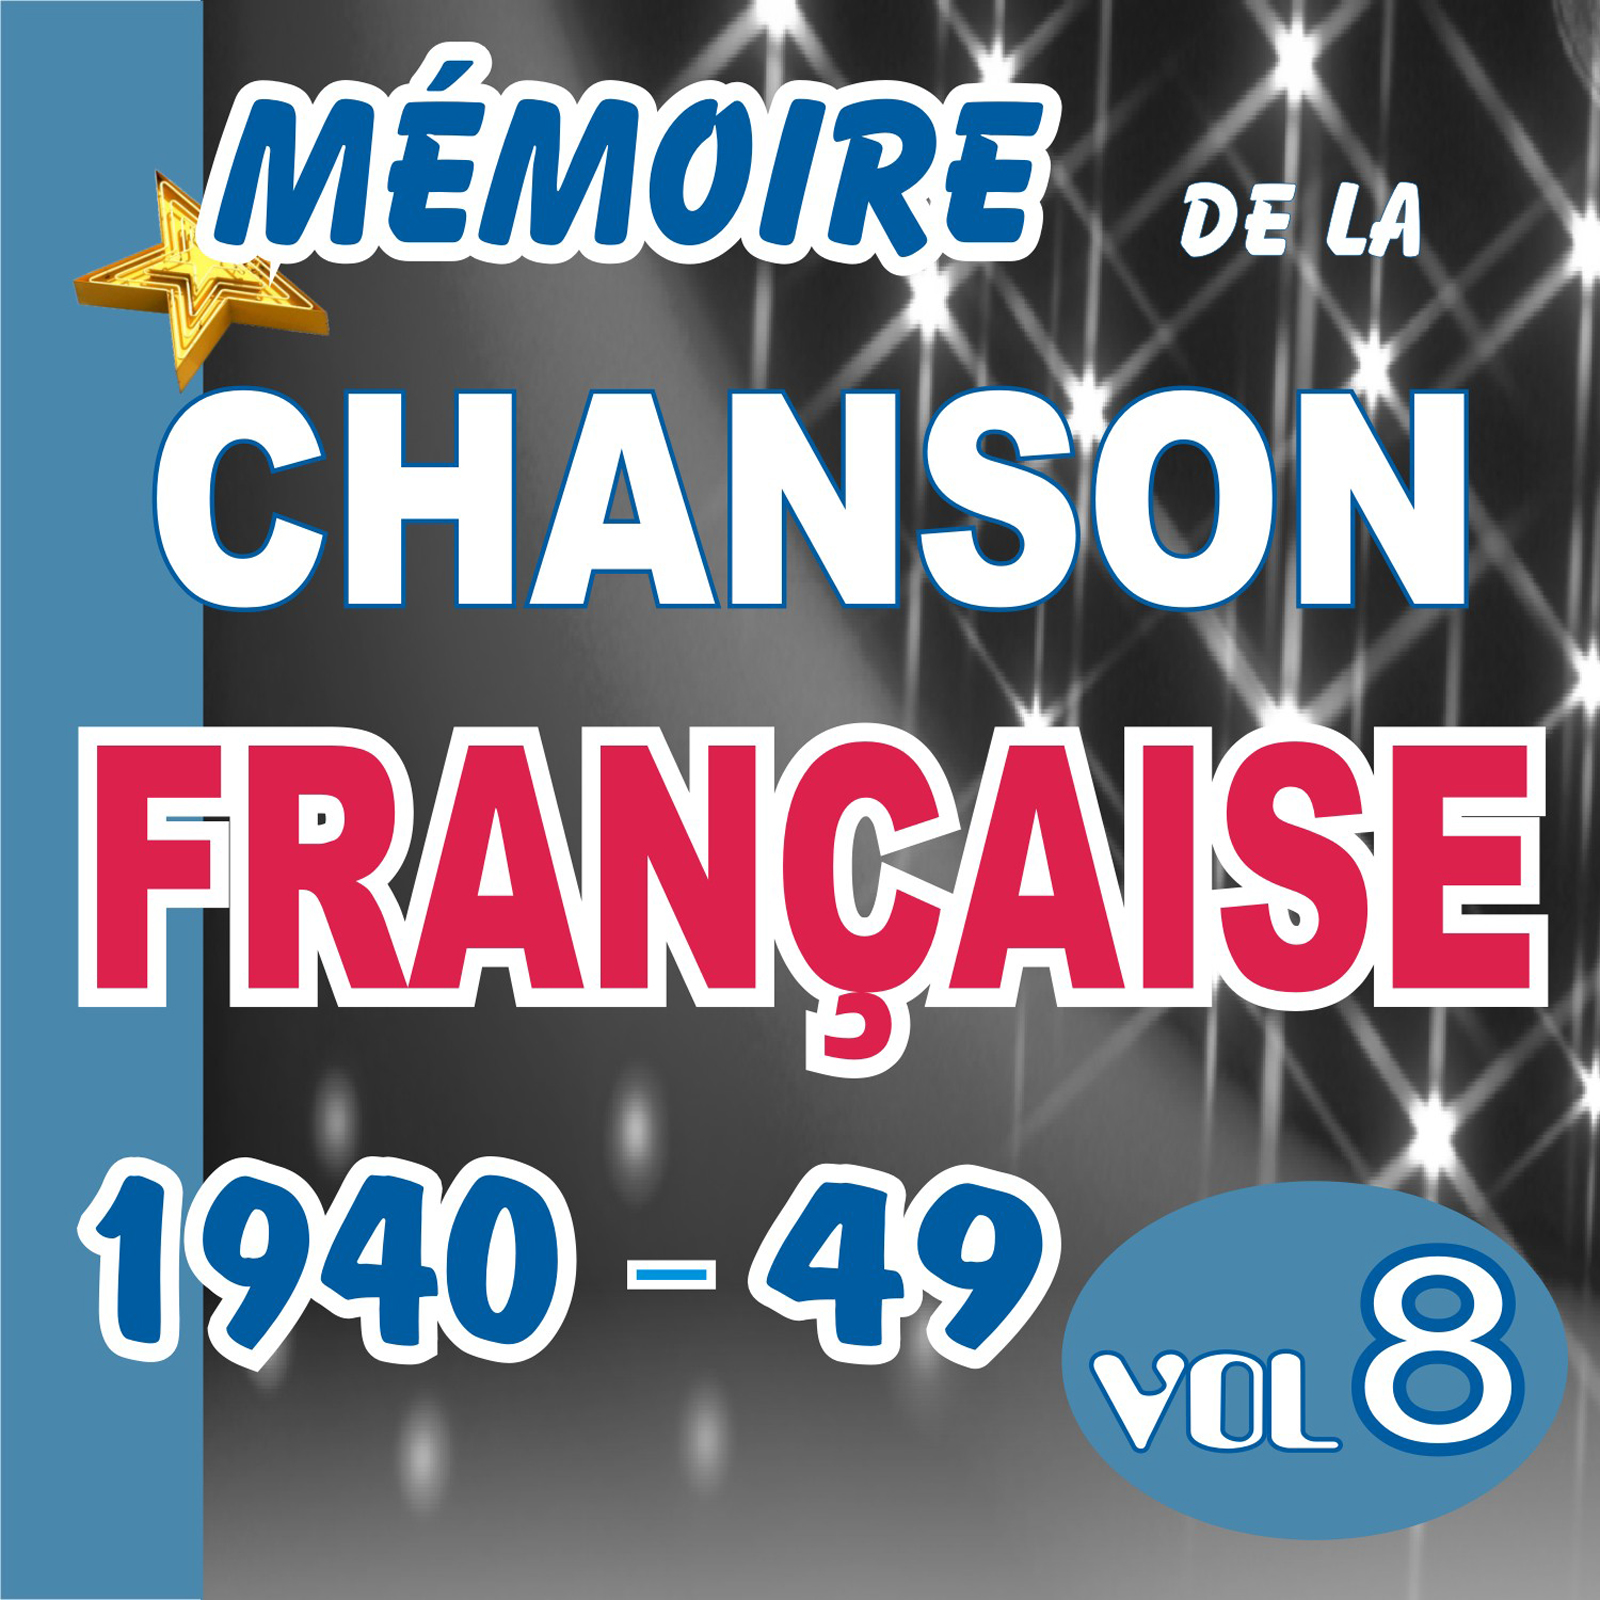 MEMOIRE DE LA CHANSON FRANCAISE DE 1940 A 1949 - VOL 8